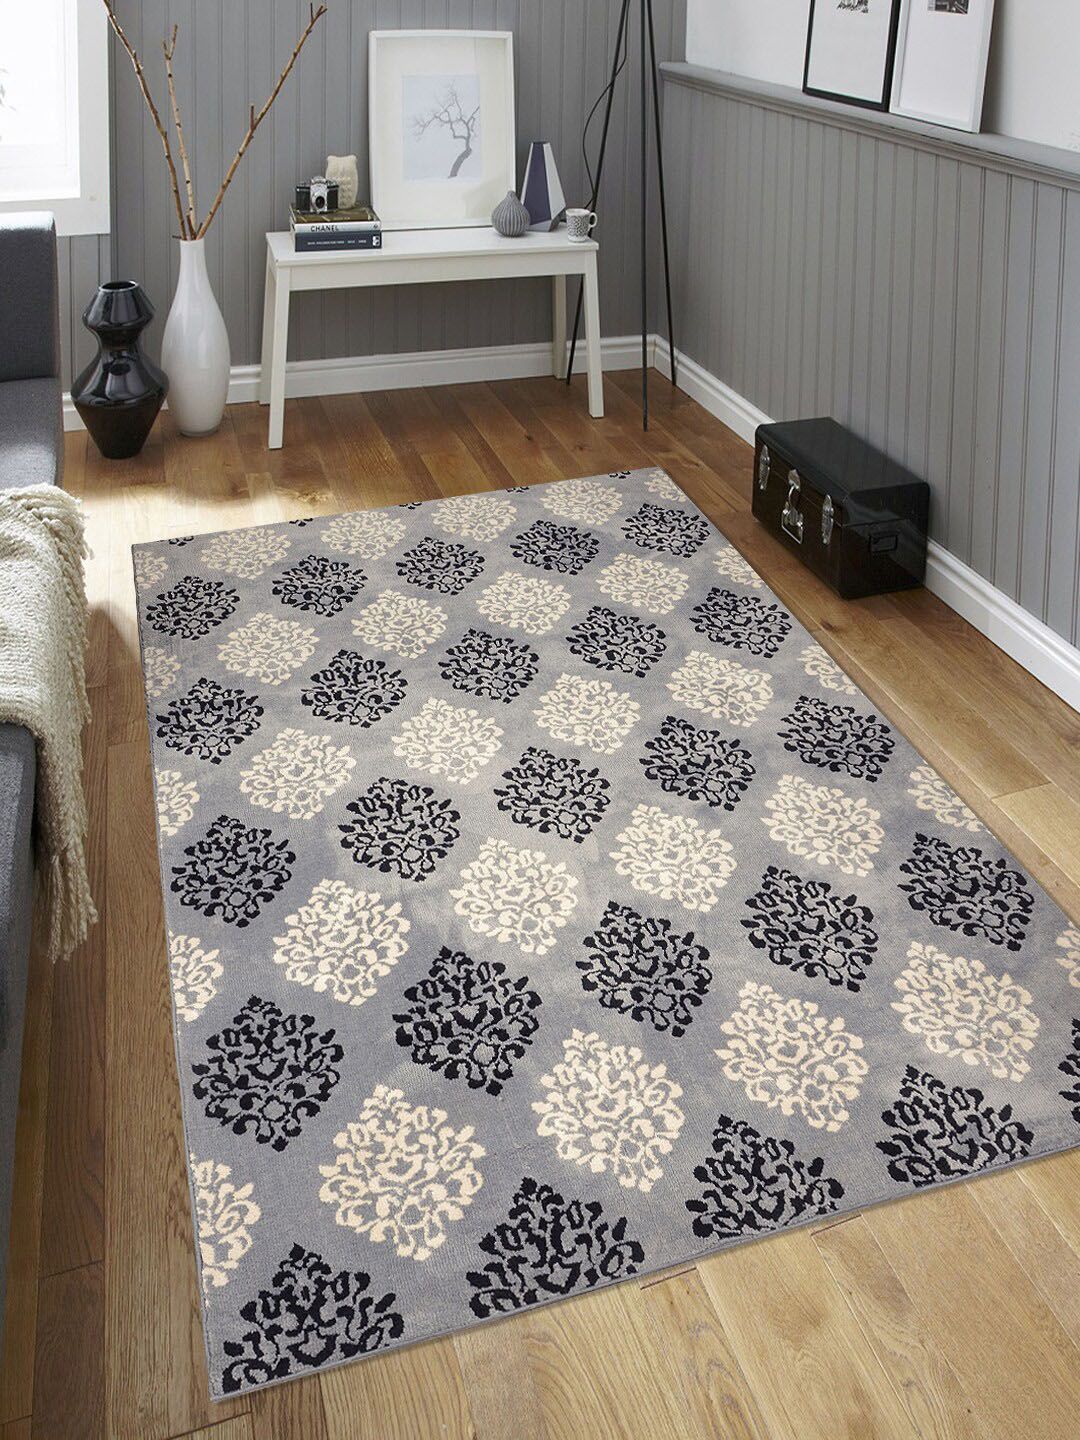 Saral Home Grey & Black Damask Pattern Anti-Skid Carpet Price in India